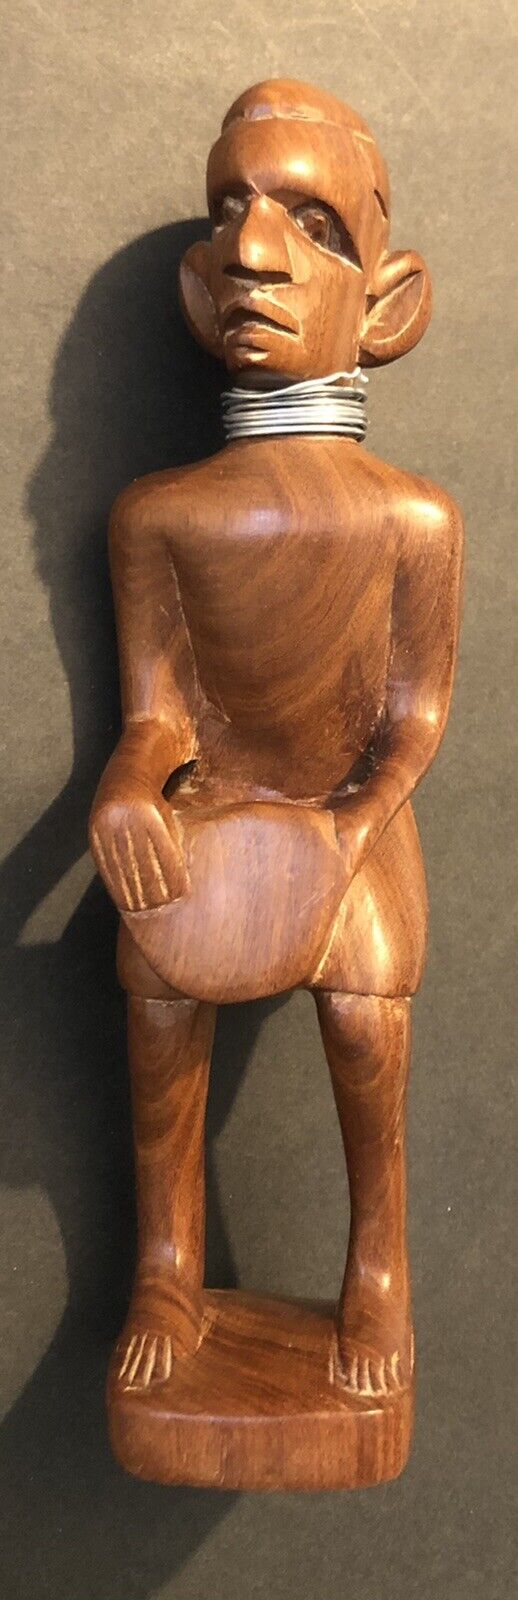 Vintage Wood Carved Figure 9.5” Figurine Tribal Man Shelf Display